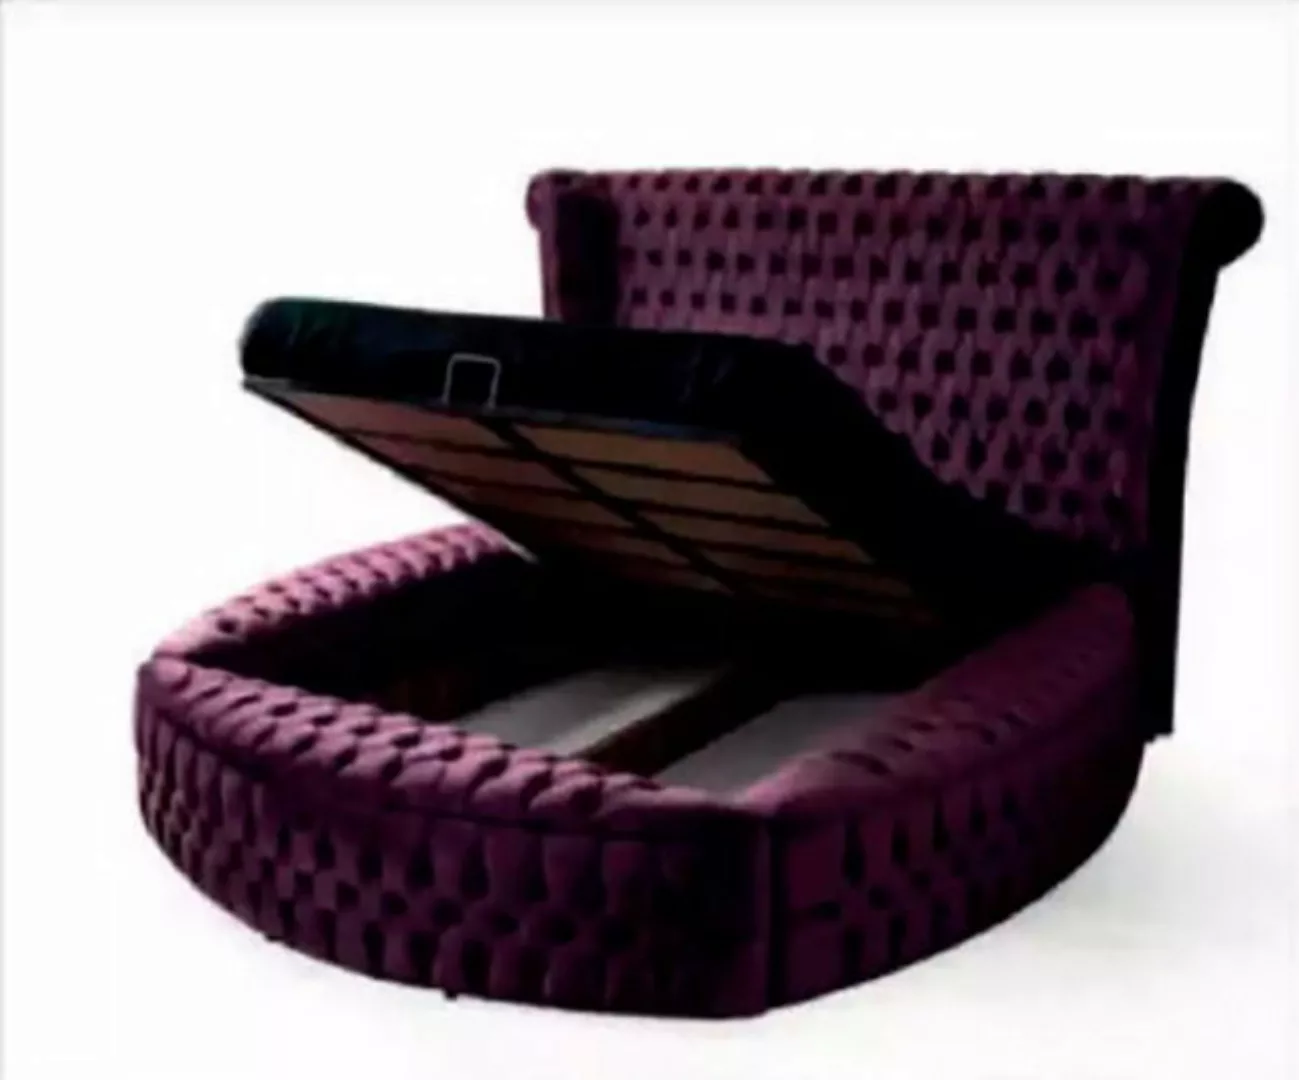 JVmoebel Bett Rundes Chesterfield Bett Lila Betten Möbel Samt Textil Einric günstig online kaufen